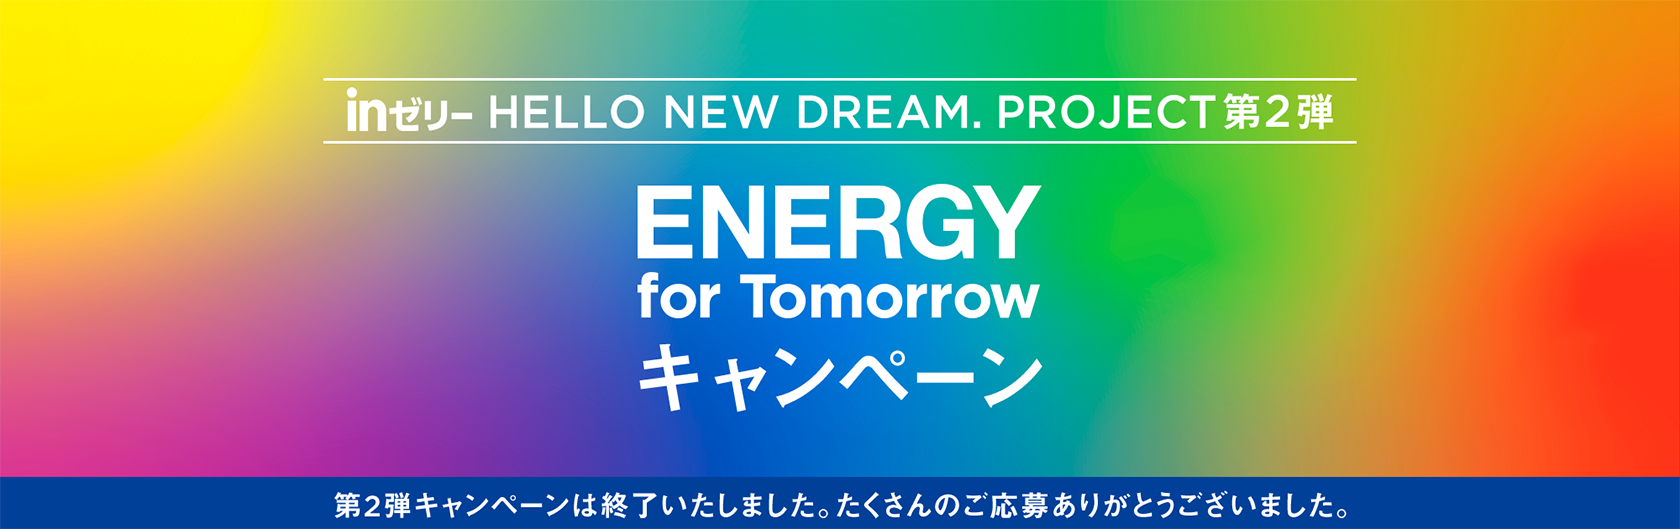 inゼリー HELLO NEW DREAM.PROJECT 第2弾 ENERGY for Tomorrow キャンペーン 第2弾キャンペーンは終了いたしました。たくさんのご応募ありがとうございました。